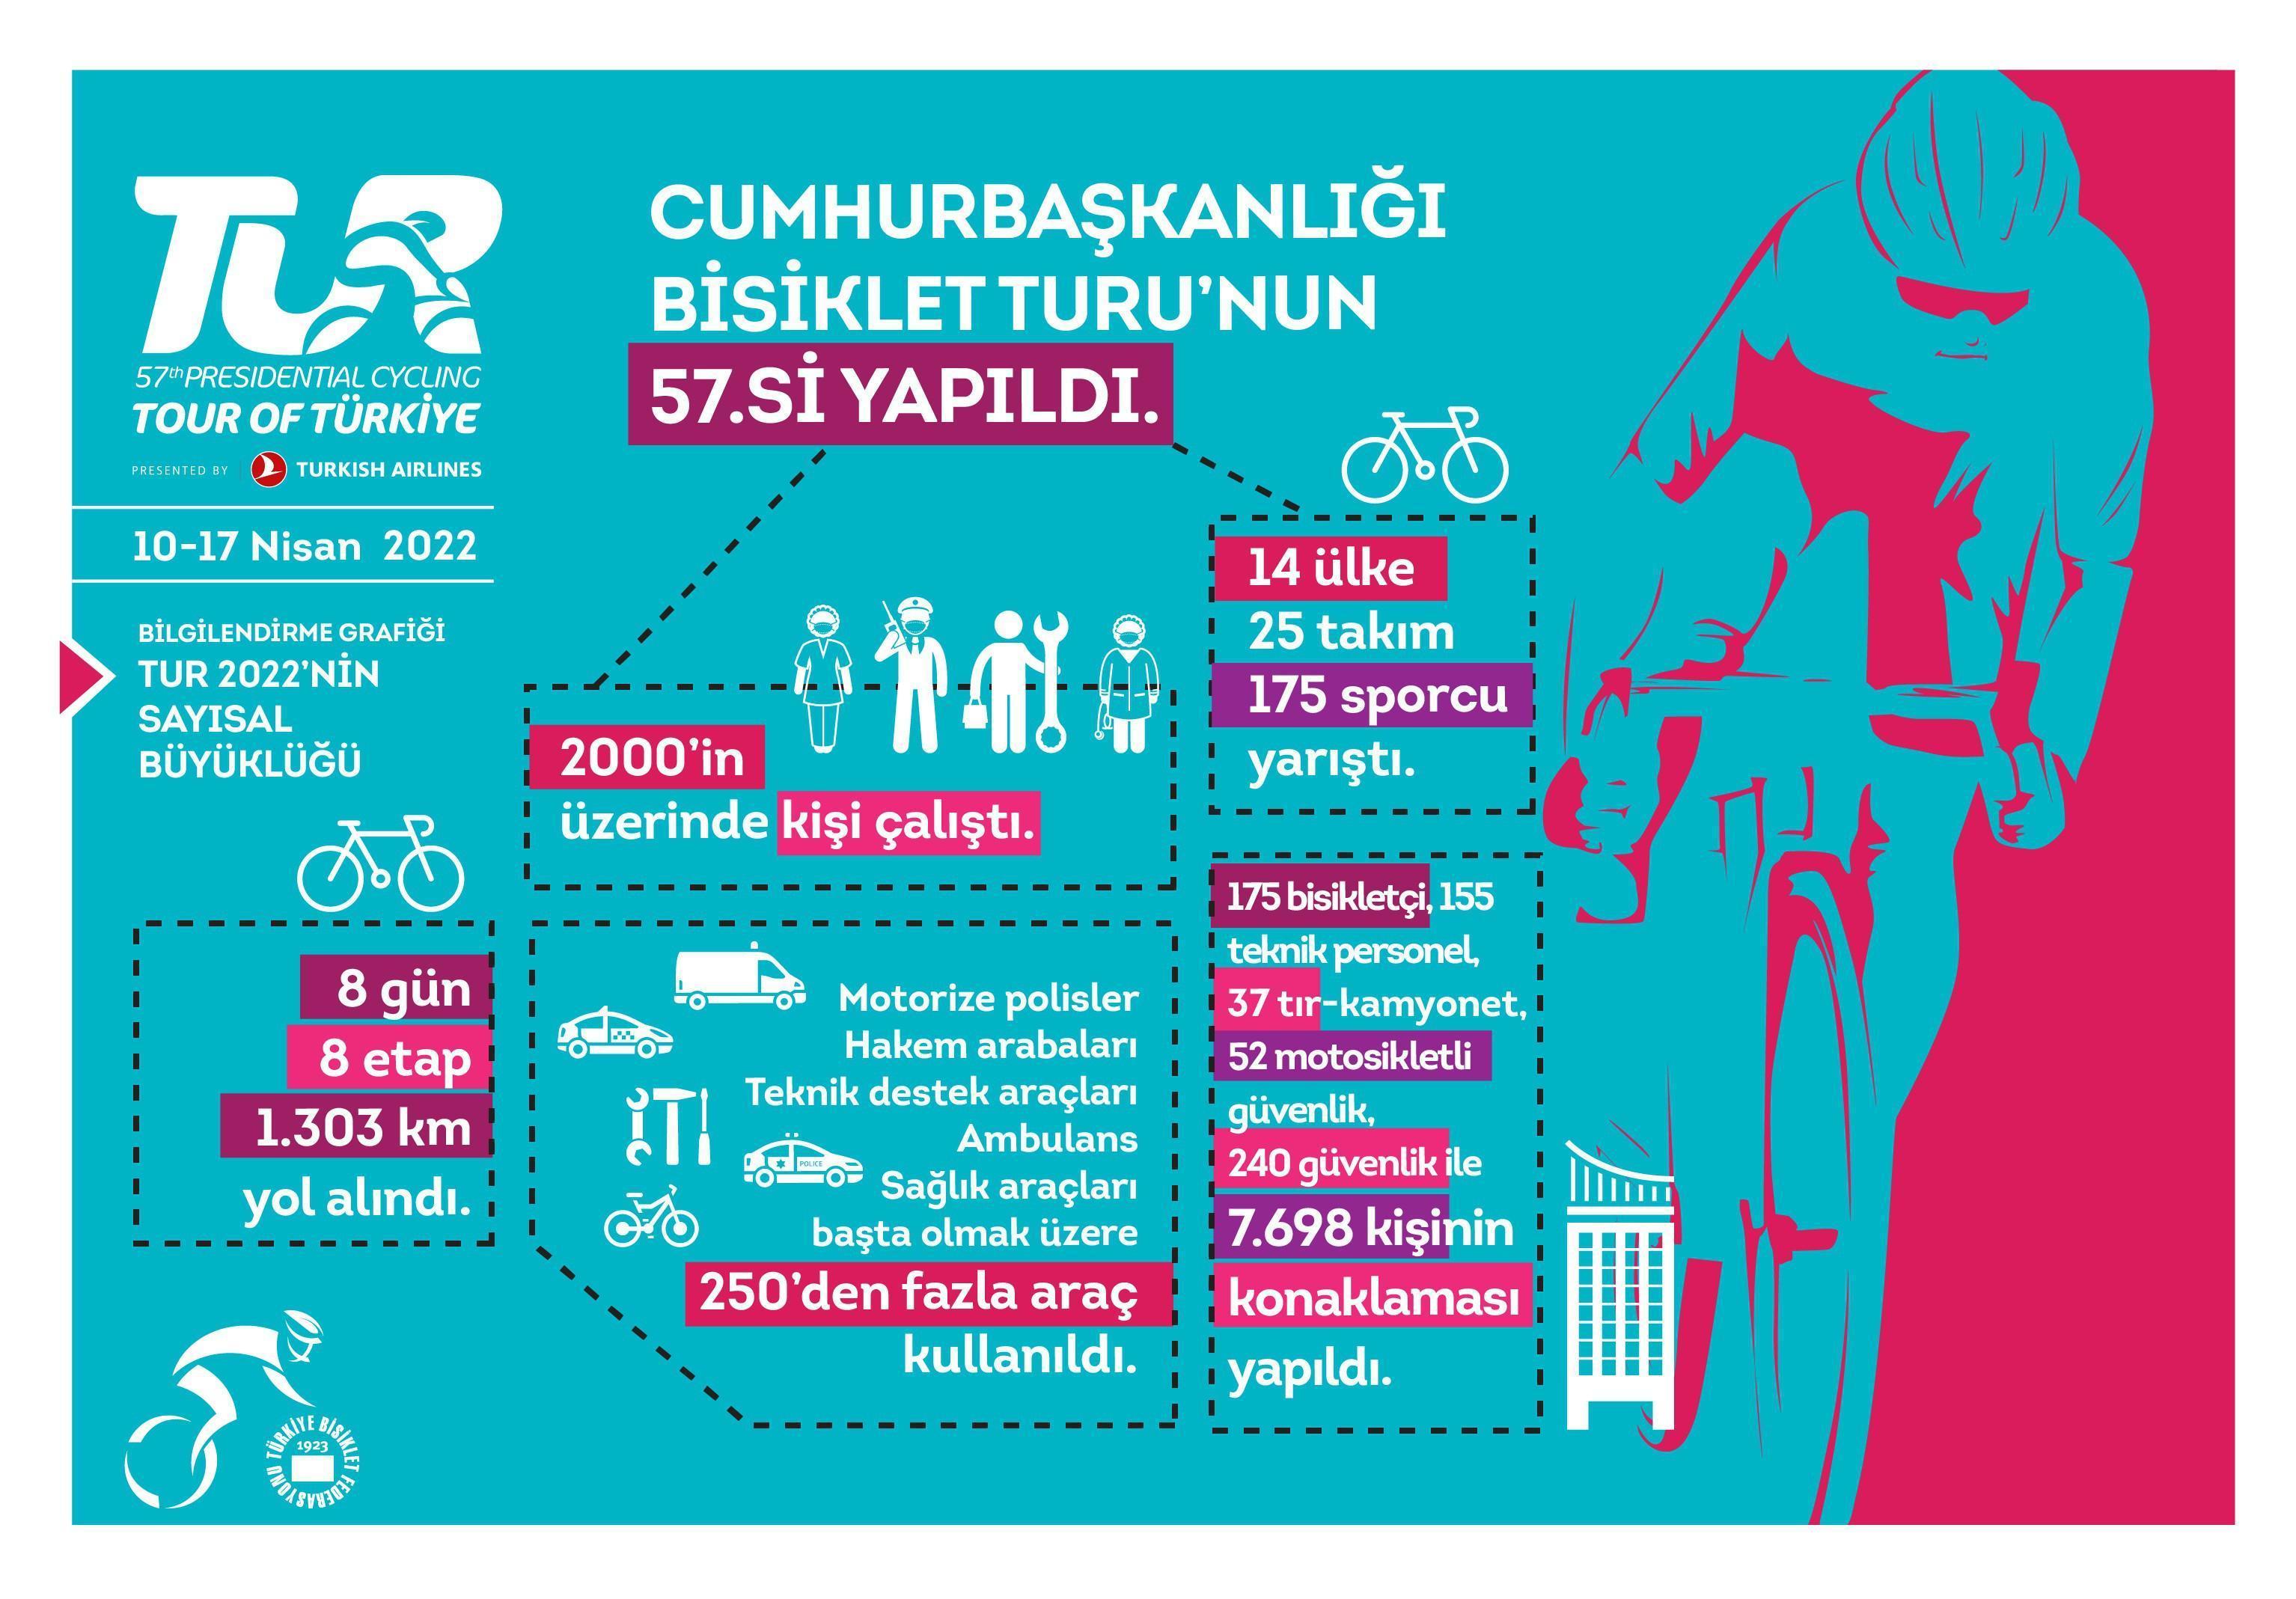 57. Cumhurbaşkanlığı Türkiye Bisiklet Turu 190 ülkede 615 milyon haneye erişti